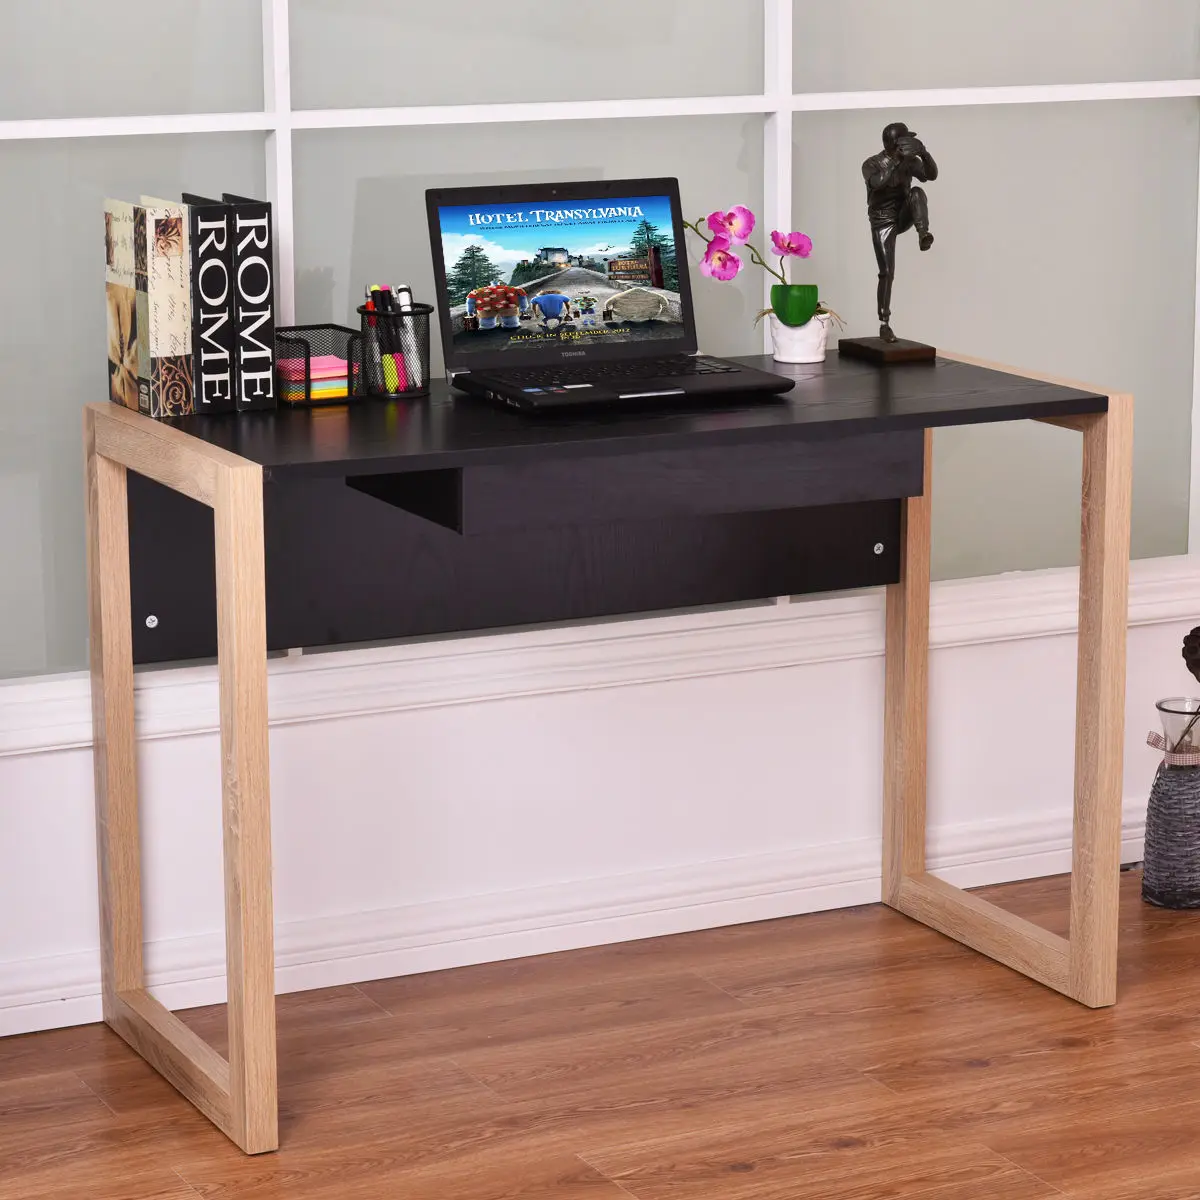 Giantex современный компьютерный стол портативных ПК деревянный стол письменной рабочей станции с ящиком мебель для дома и офиса HW54479